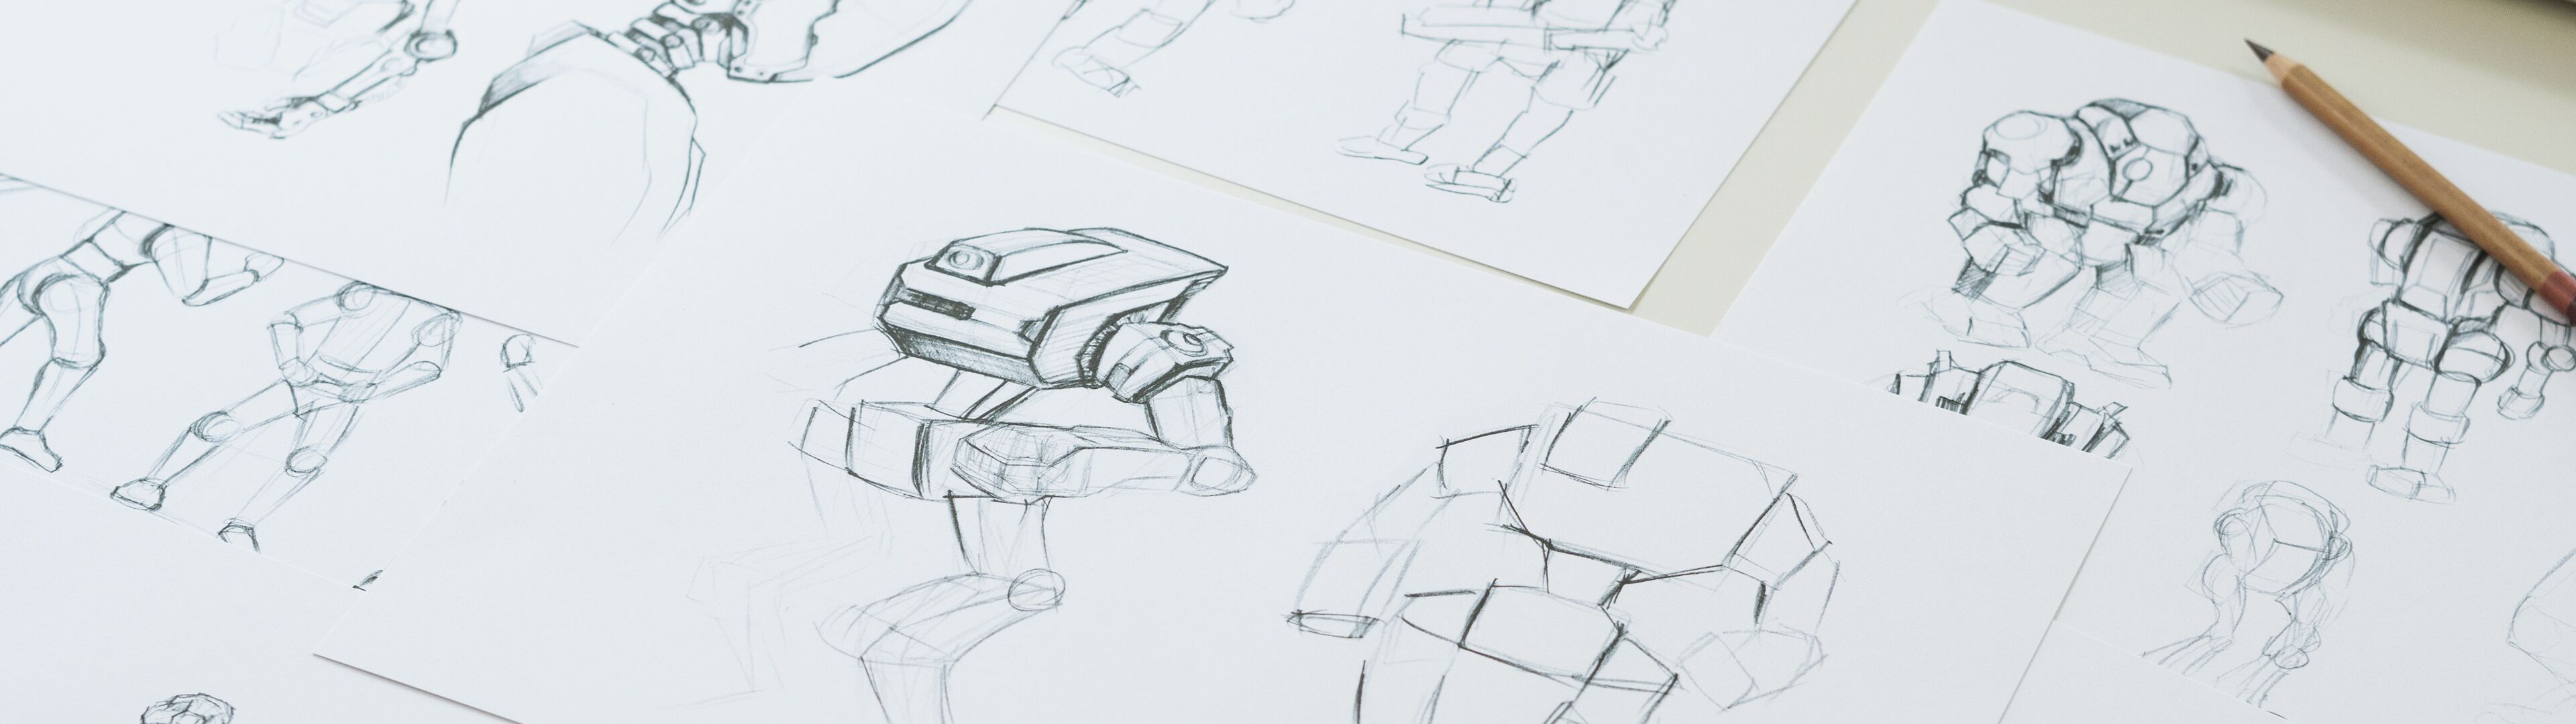 Plusieurs esquisses d'un personnage robot dans diverses poses réparties sur l'espace de travail d'un designer, illustrant le processus de développement de concept.